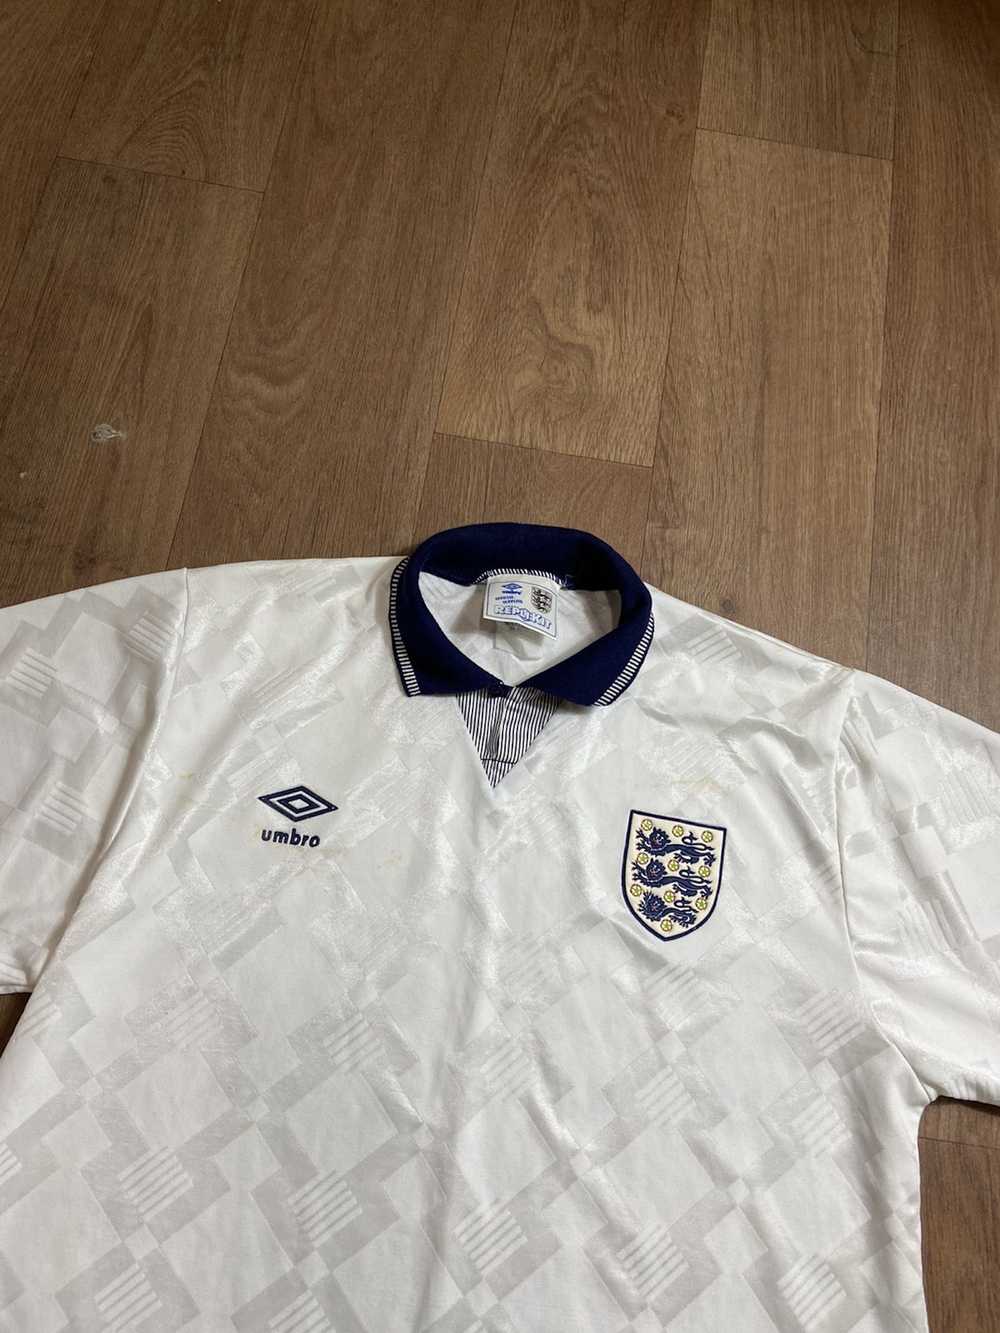 Soccer Jersey × Streetwear × Vintage ENGLAND VINT… - image 2